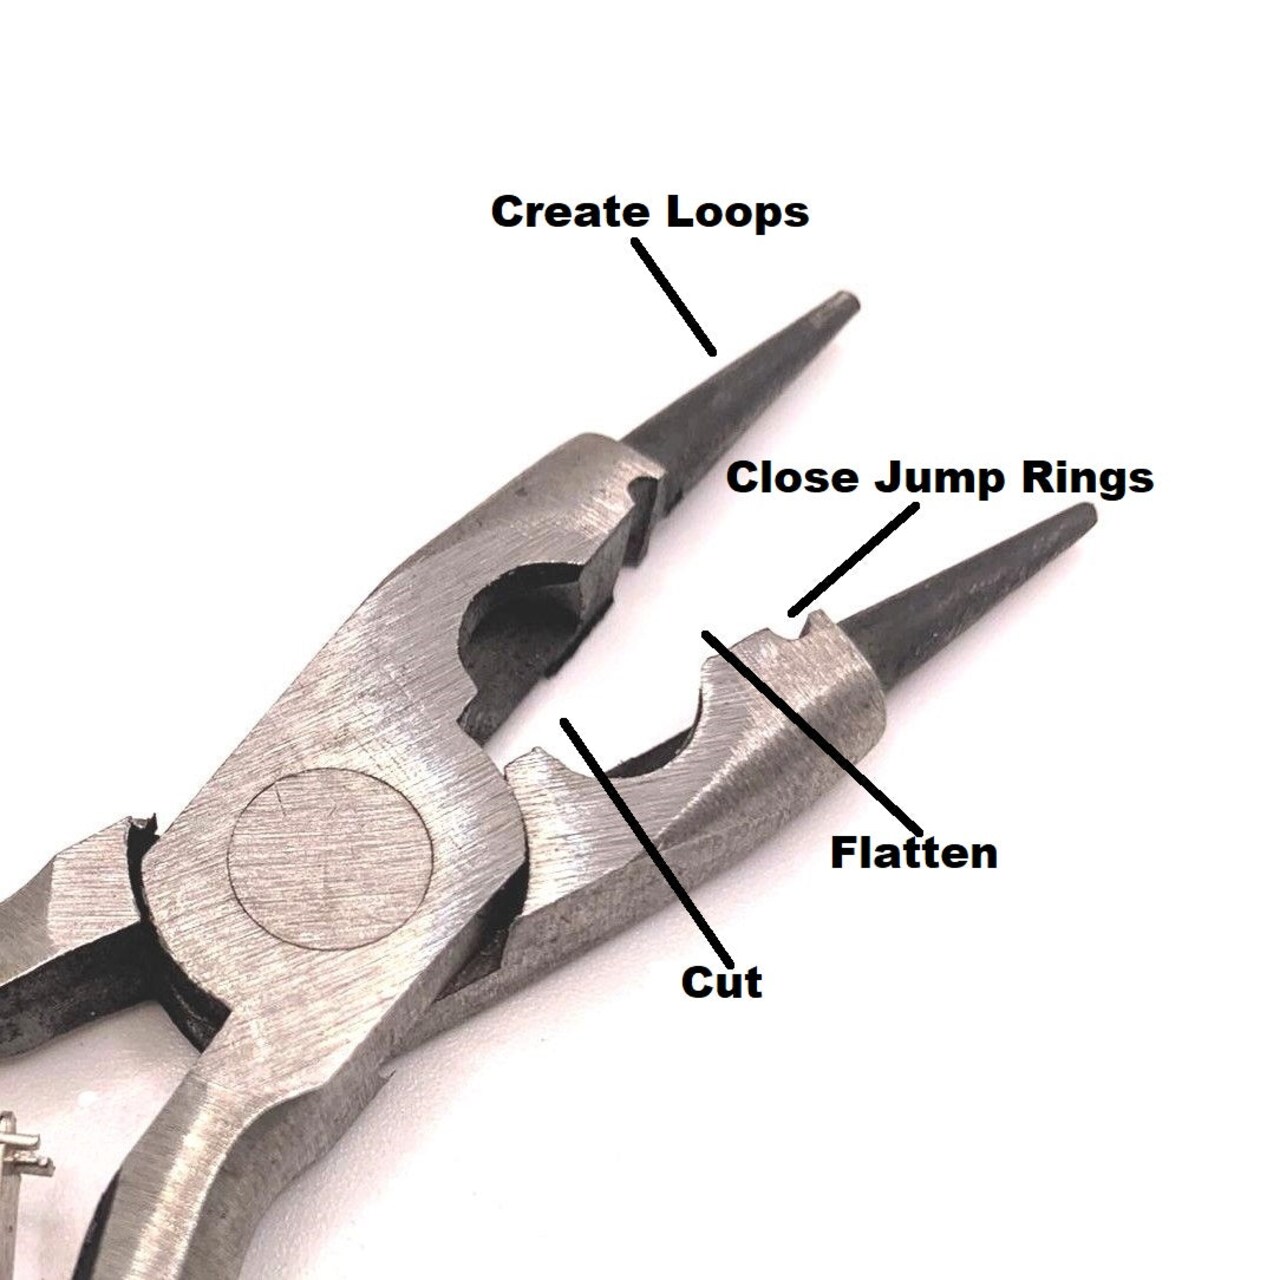 4-in-1 Multi-Use Jewelry Pliers